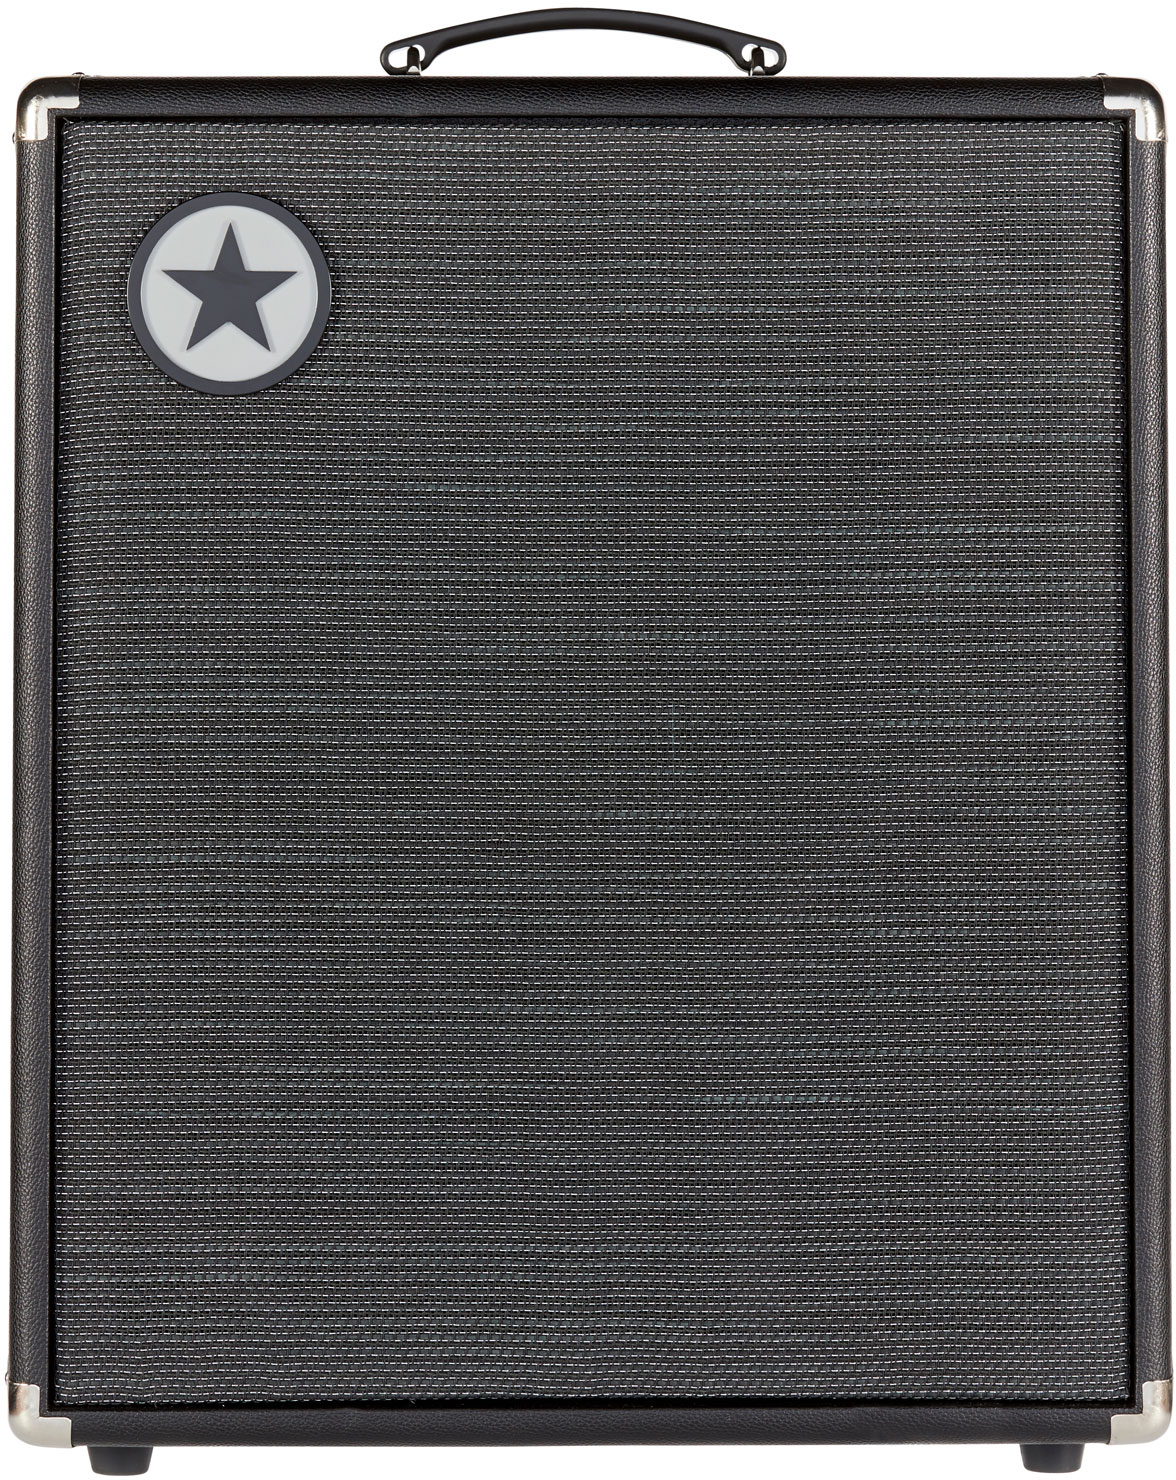 Blackstar Unity 500 - Combo amplificador para bajo - Variation 1